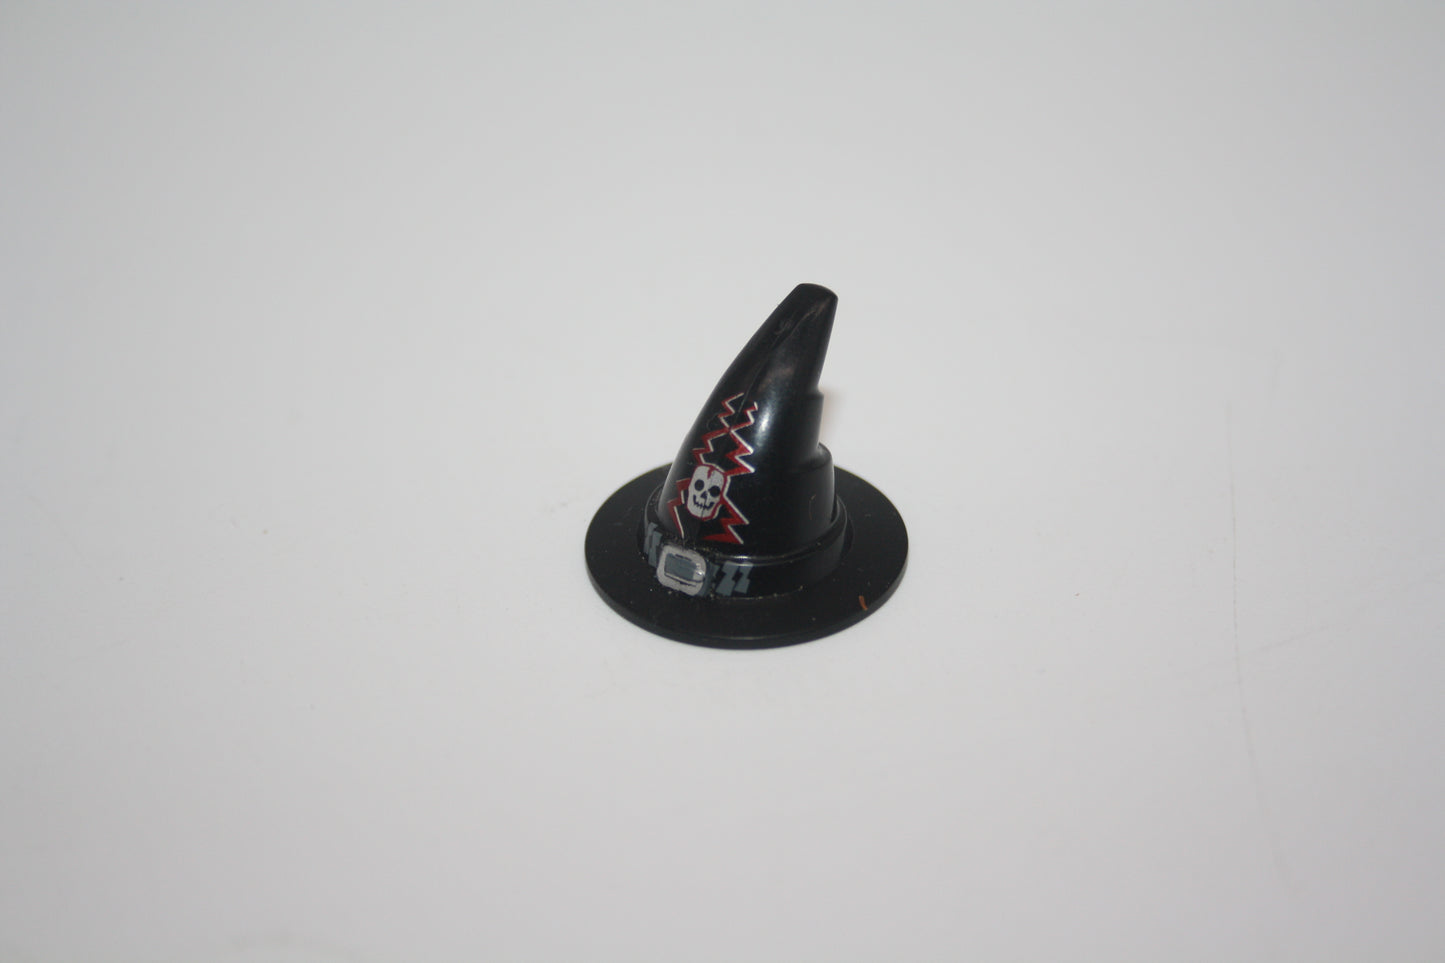 LEGO® - Wizard/Zauberer/Hexen Hut mit mit silberner Schnalle, Totenkopf und Blitzmuster - versch. Farben - 6131pb01 - Helm - Accessoires/Zubehör